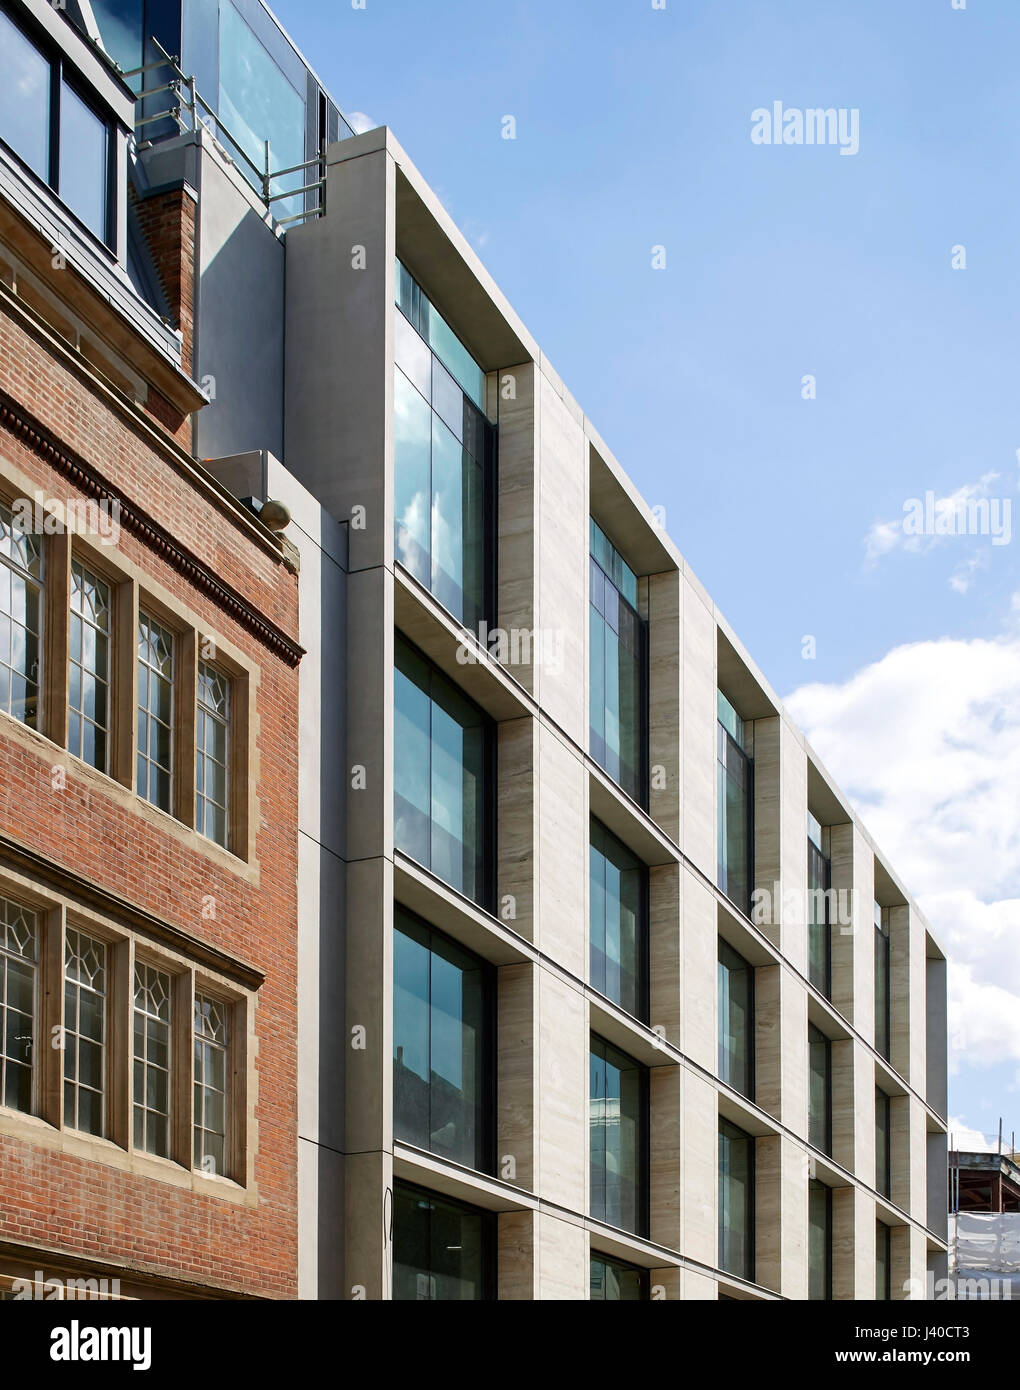 La juxtaposition de nouvelles et d'anciennes façades. Chancery Lane, Londres, Royaume-Uni. Architecte : Bennetts Associates Architects, 2015. Banque D'Images